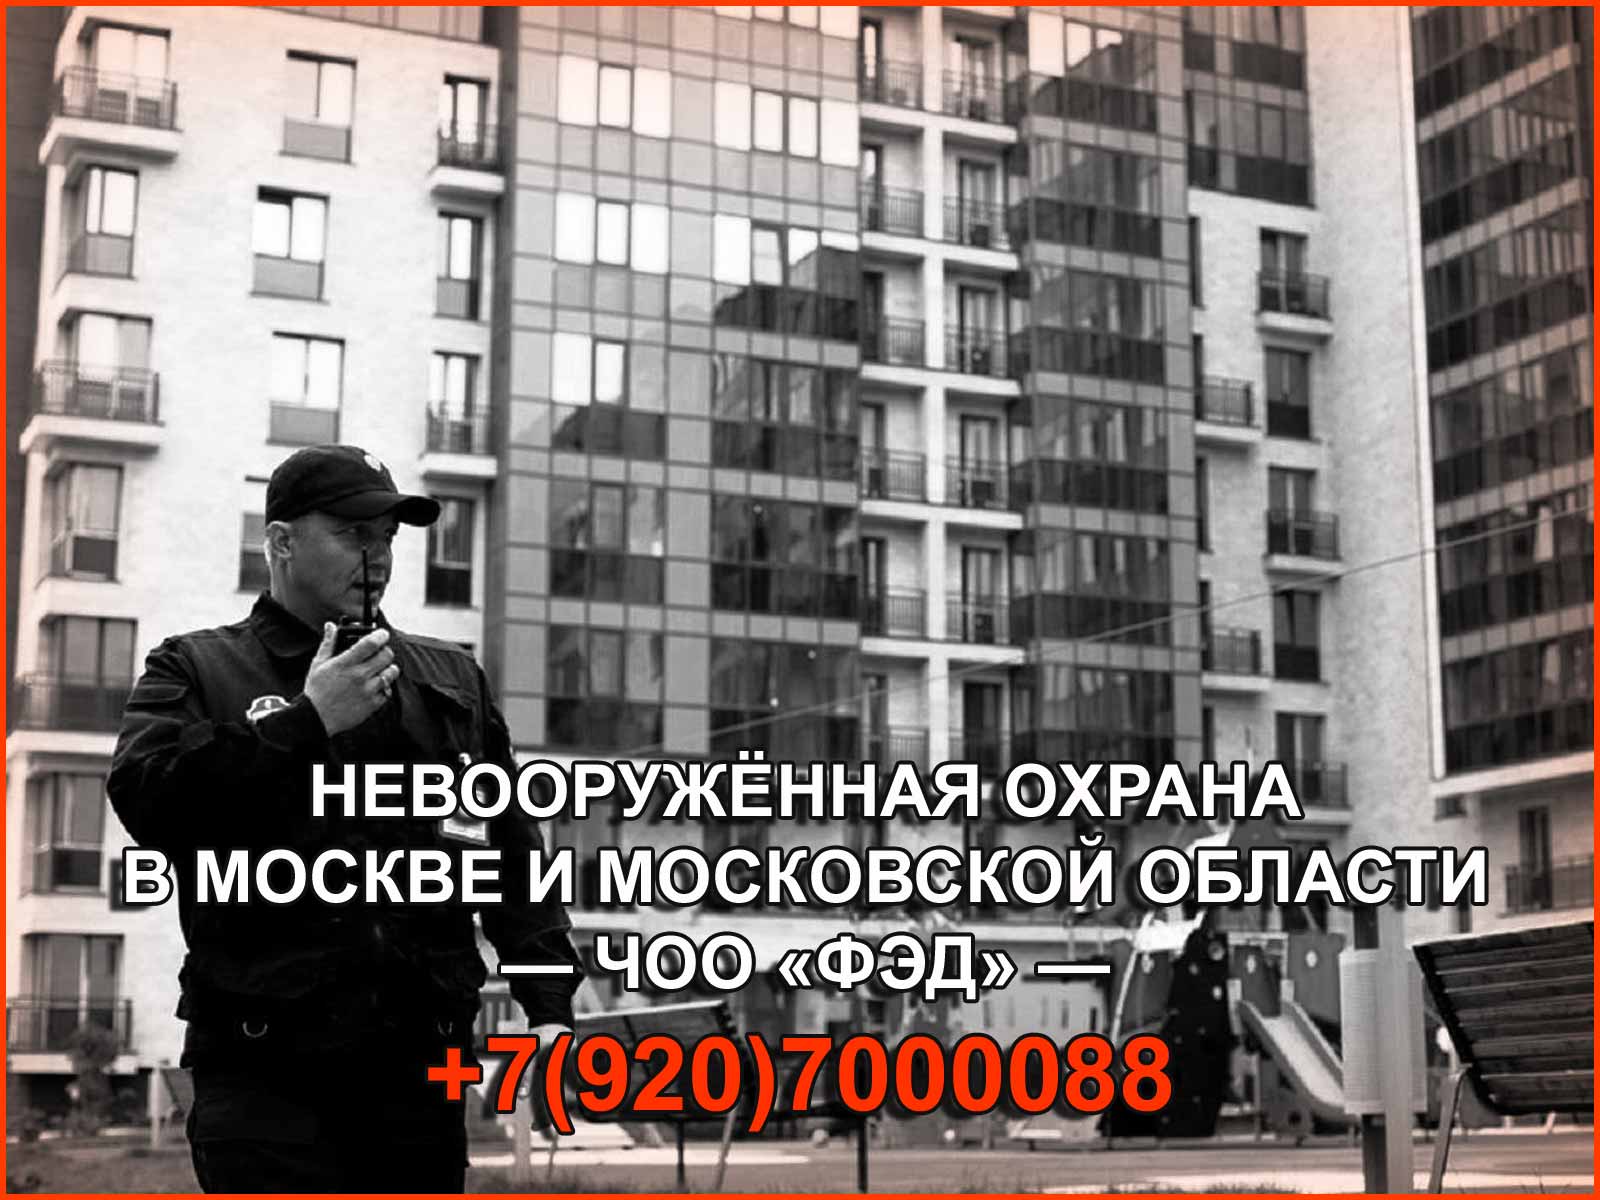 Невооруженная охрана объектов в Москве и Московской области от ЧОО "ФЭД